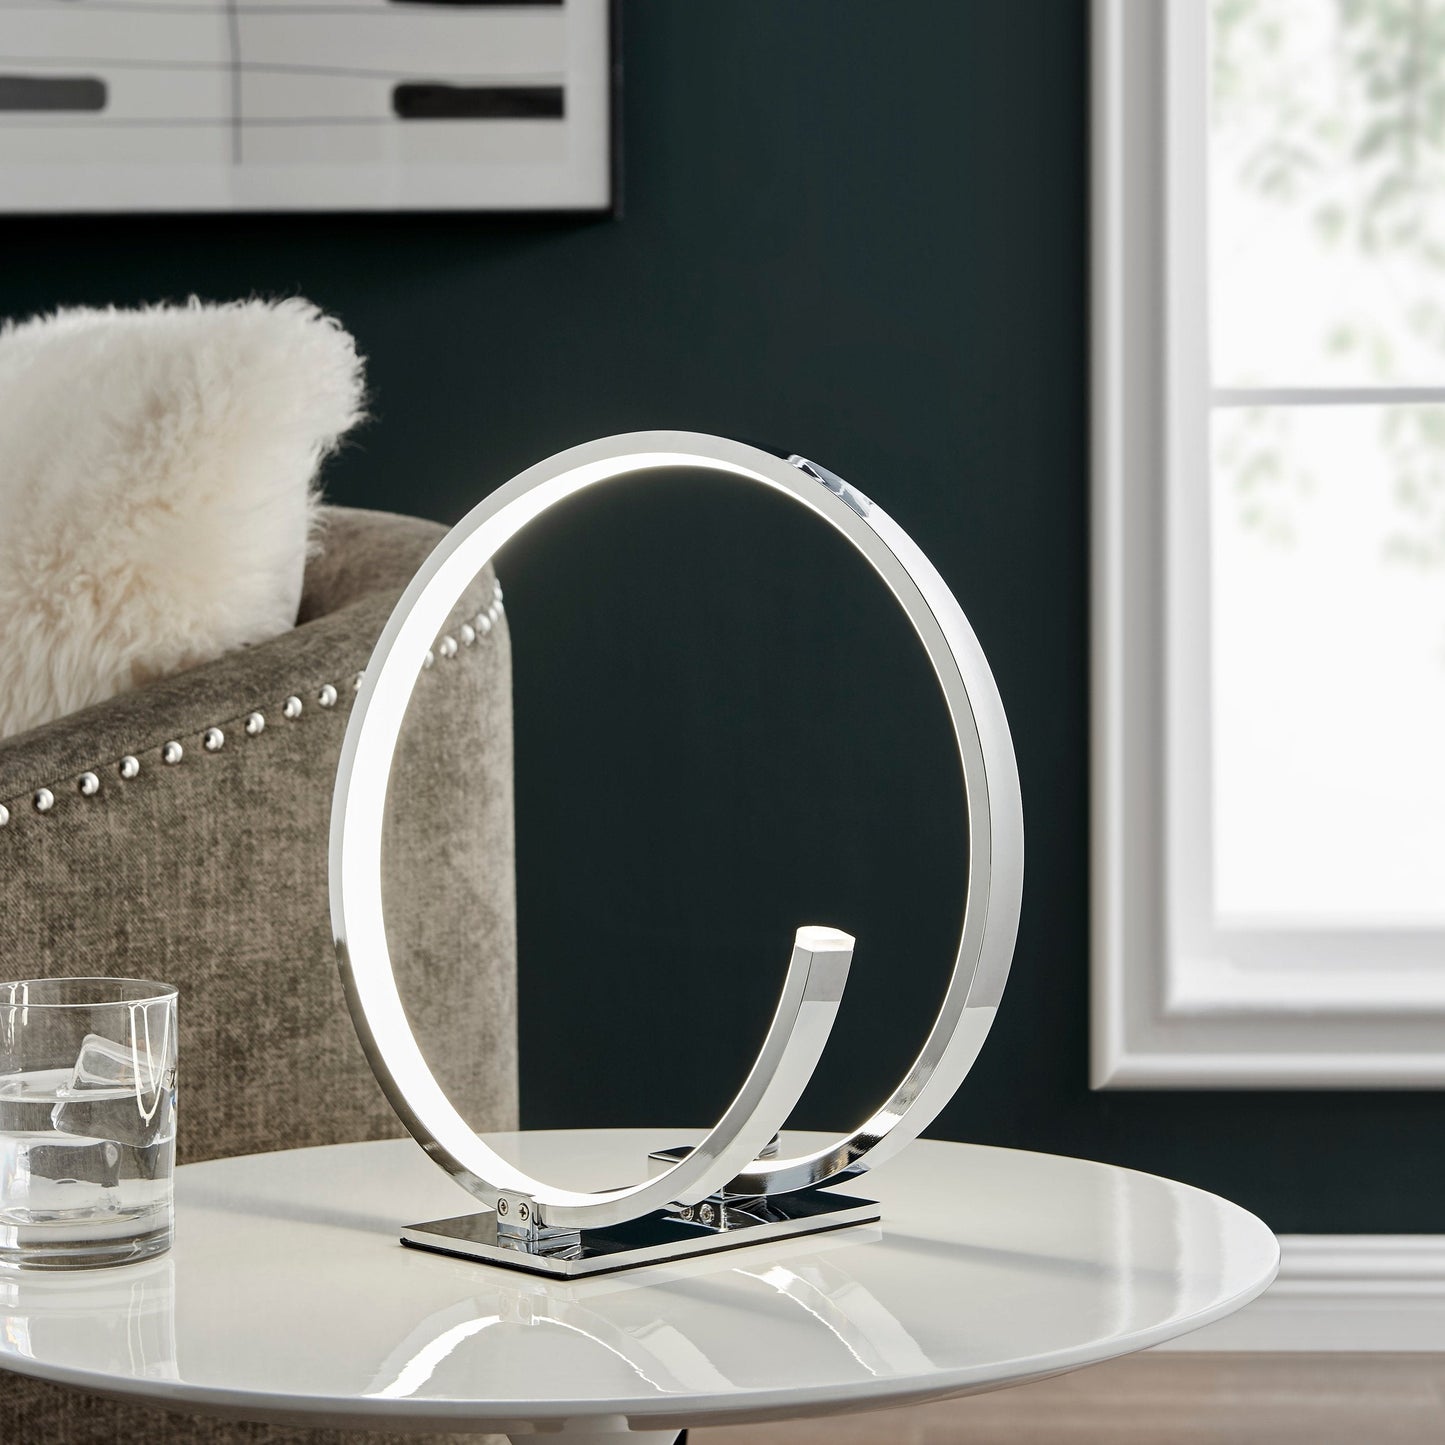 LUMARA Circular Design Table Lamp Led Strip